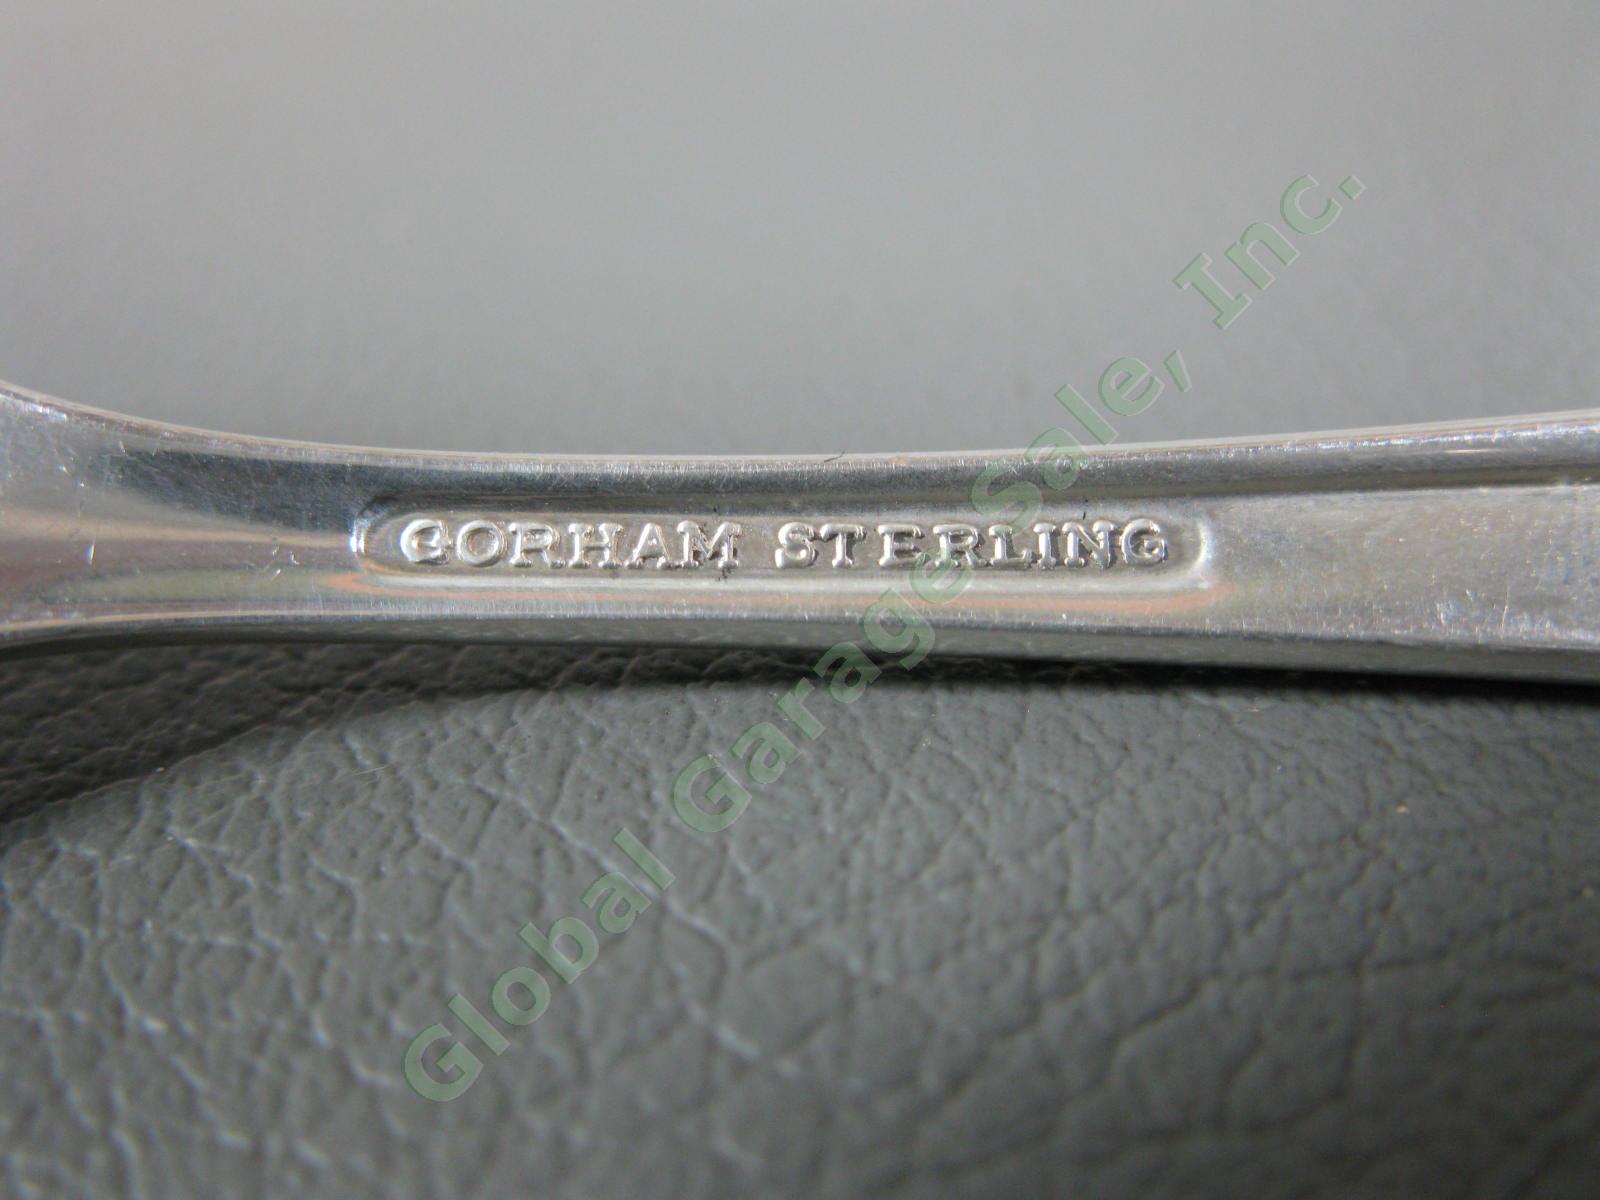 12 Gorham Firelight Sterling Silver 6 3/4" Salad Fork Set 516 Grams 925 18oz NR 3